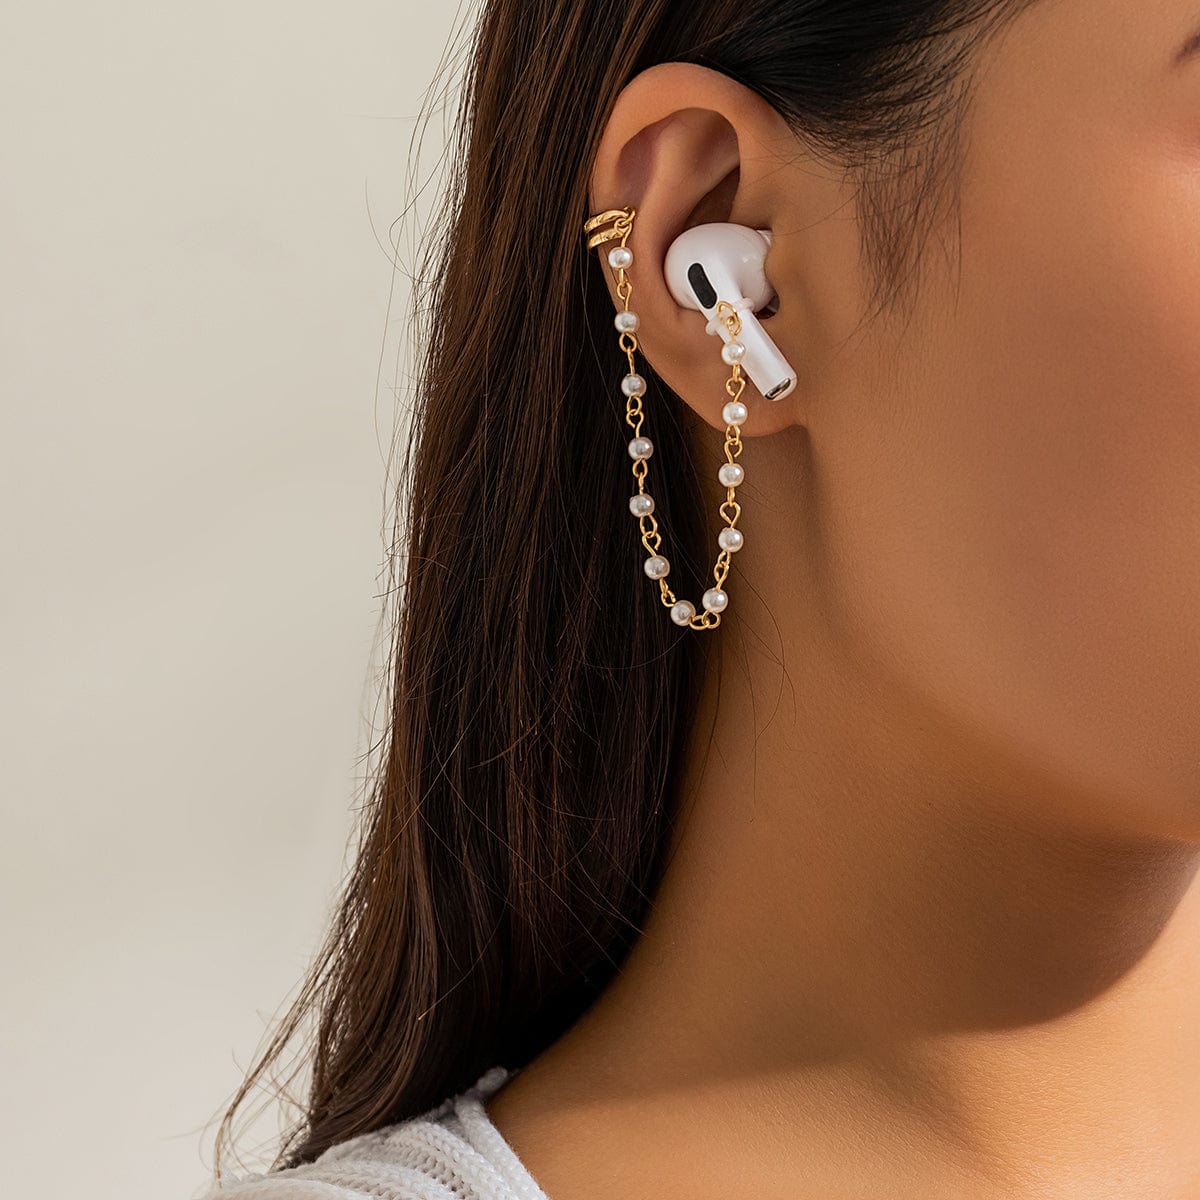 Anti-lost Wireless AirPods Earphone Pearl Chain Ear Cuff Earring